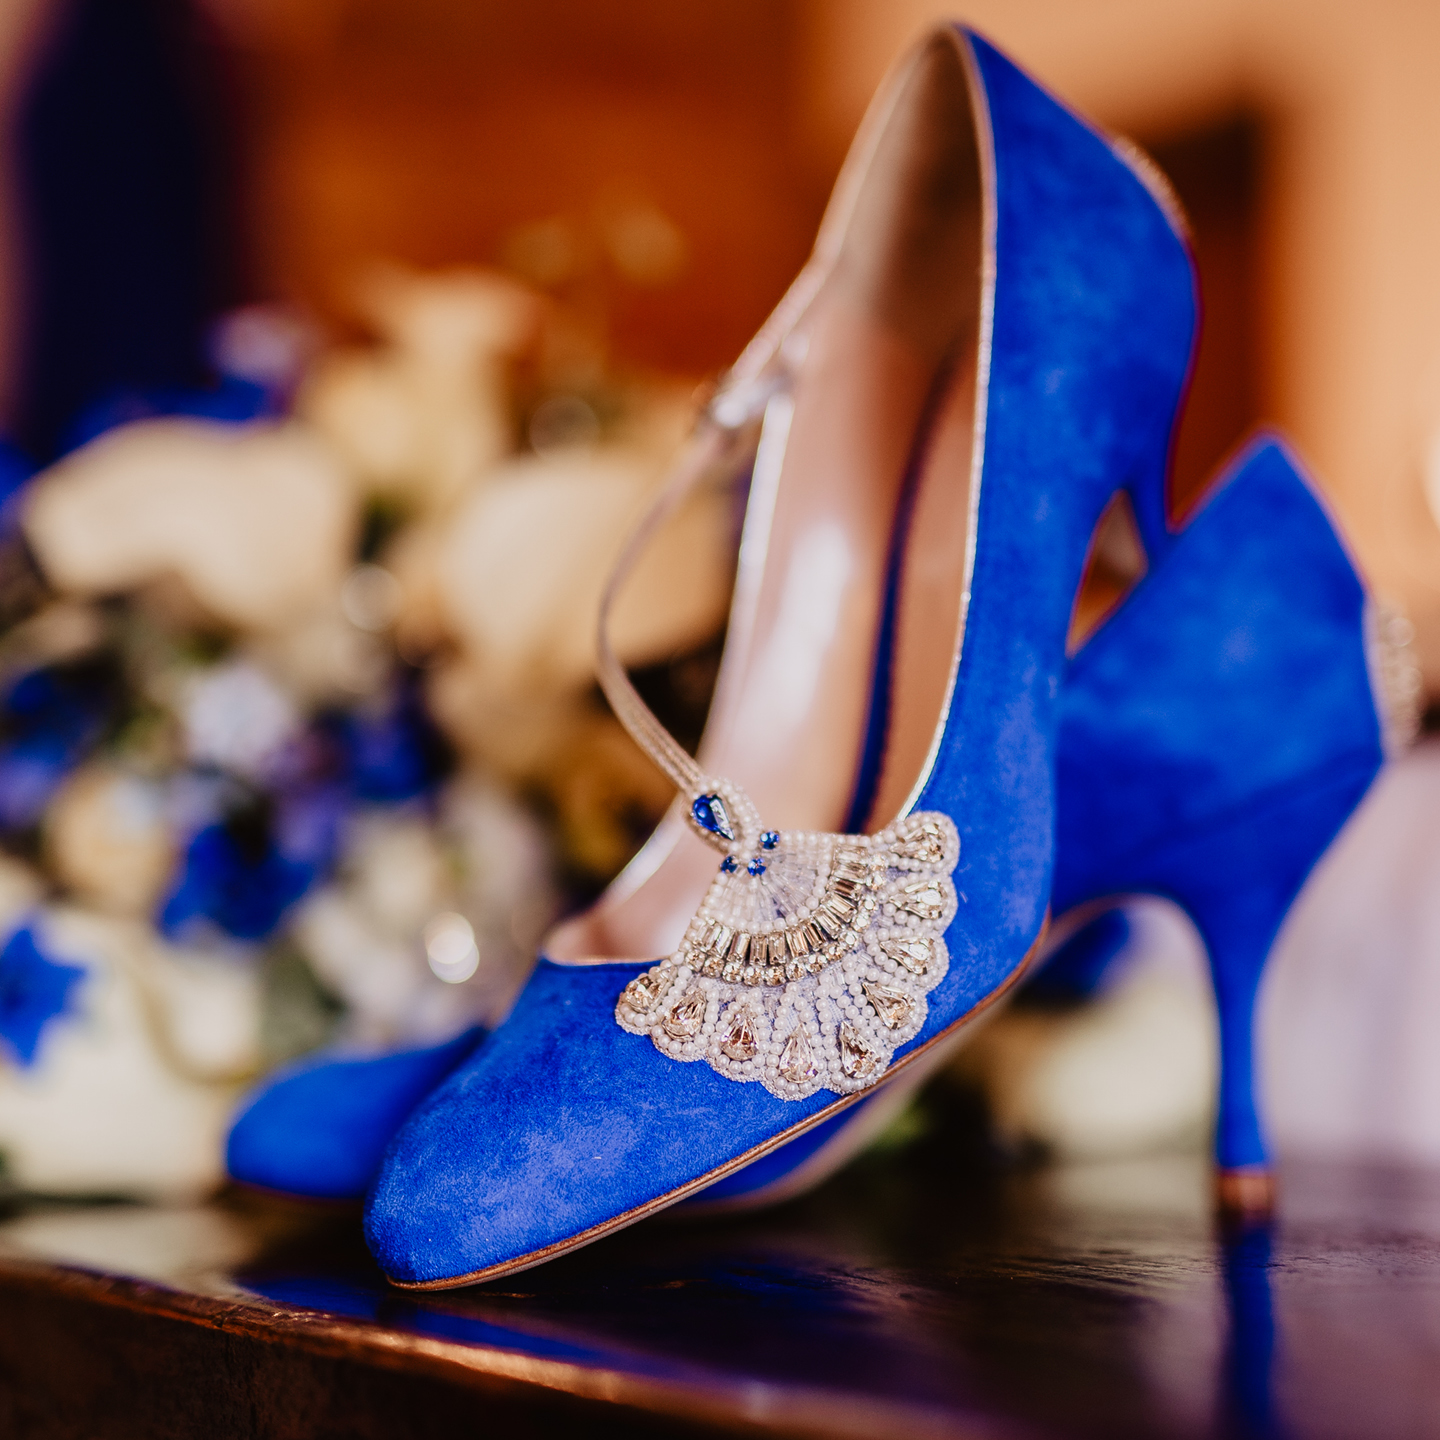 bespoke wedding Emmy shoes, blue wedding shoes